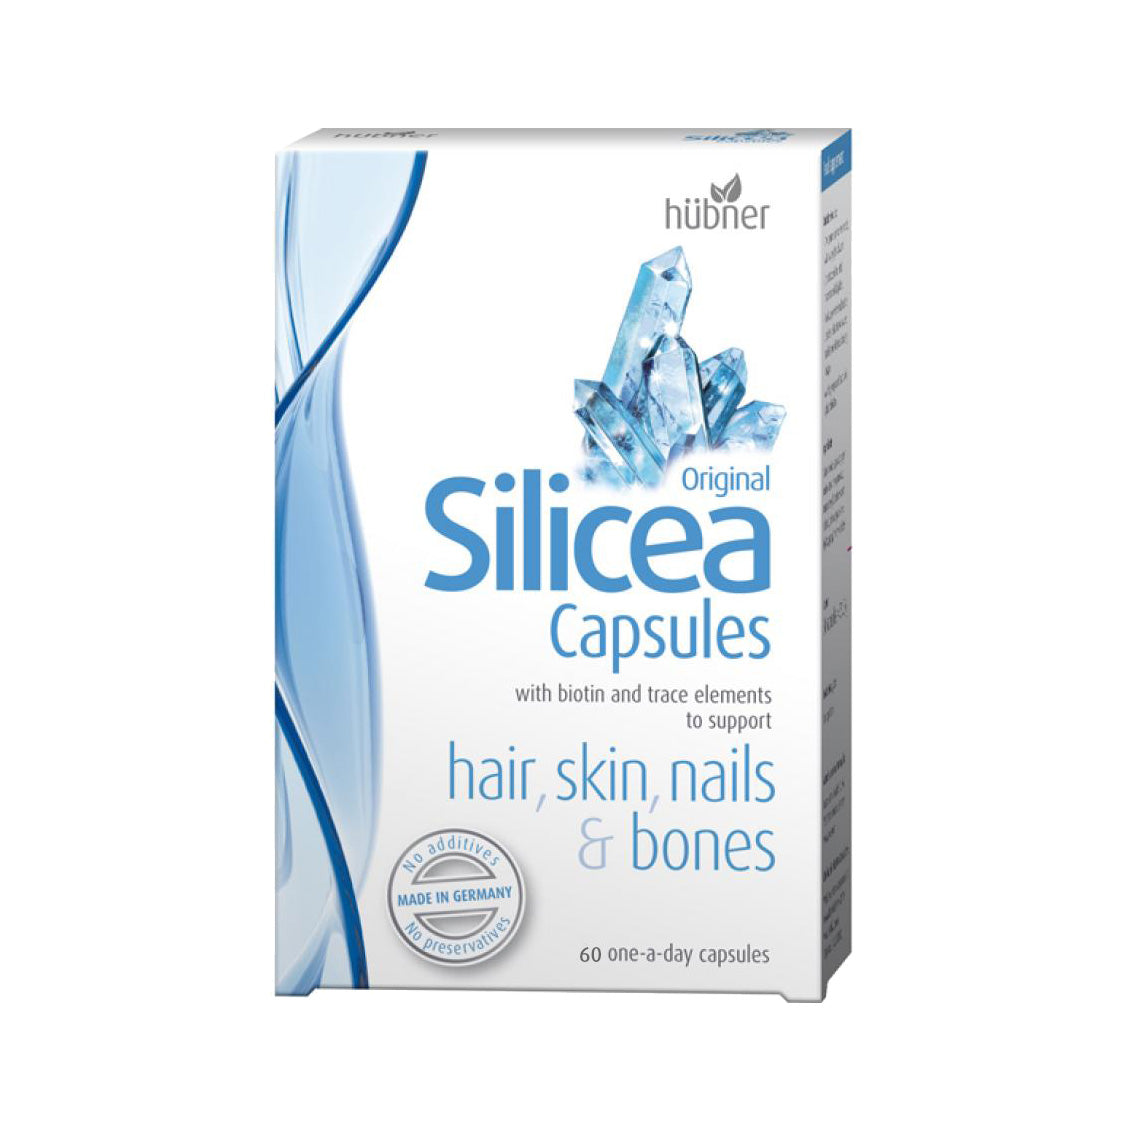 Silicea Hair, Skin, Nail, Bones